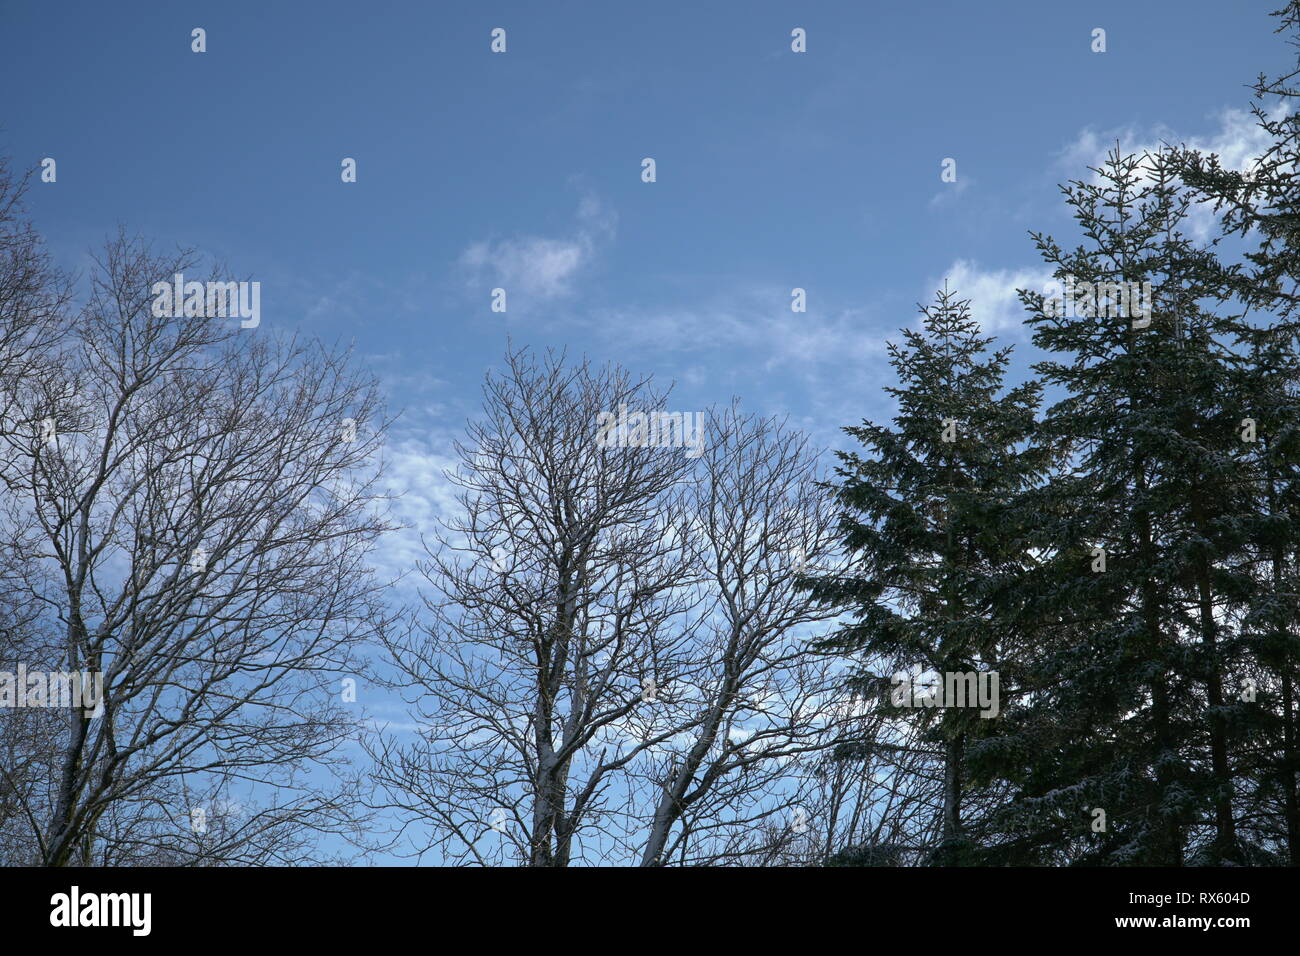 Nackte Zweige auf Blau bewölkter Himmel Hintergrund. Natur Querformat mit großen Fichte und Blatt Bäume von unten in den Himmel. Stockfoto